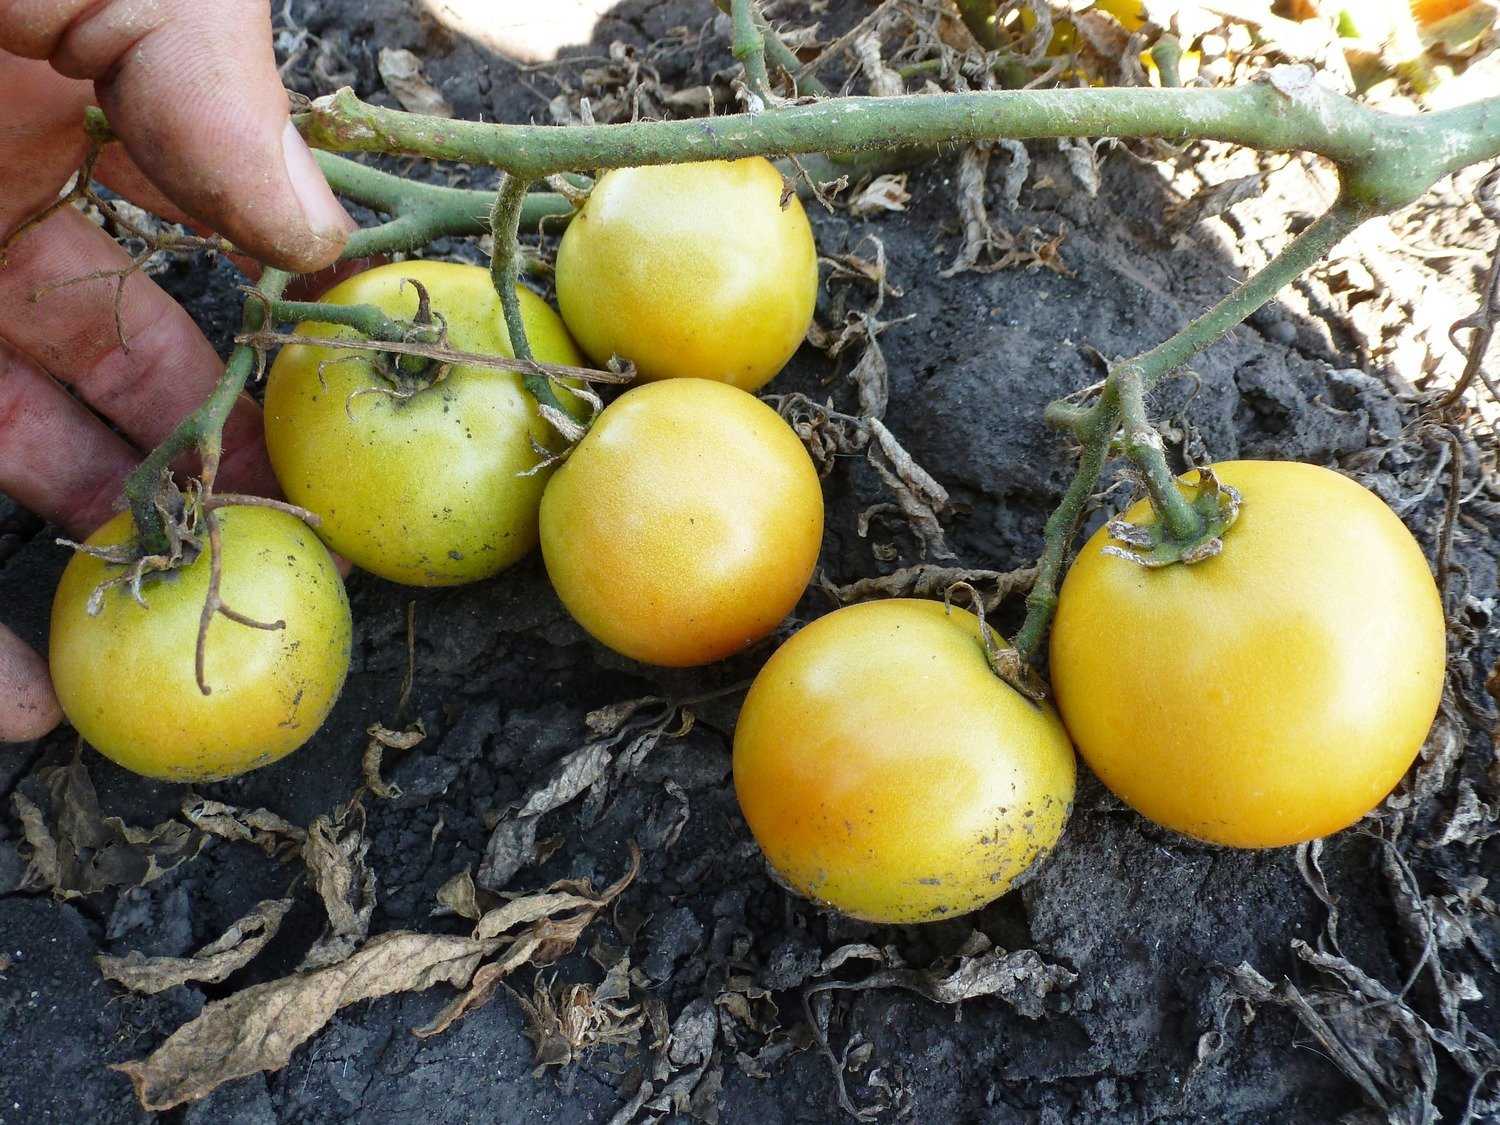 Томат лонг кипер: характеристика и описание сорта с фото, выращивание помидора, урожайность, когда сажать семена, отзывы тех, кто сажал